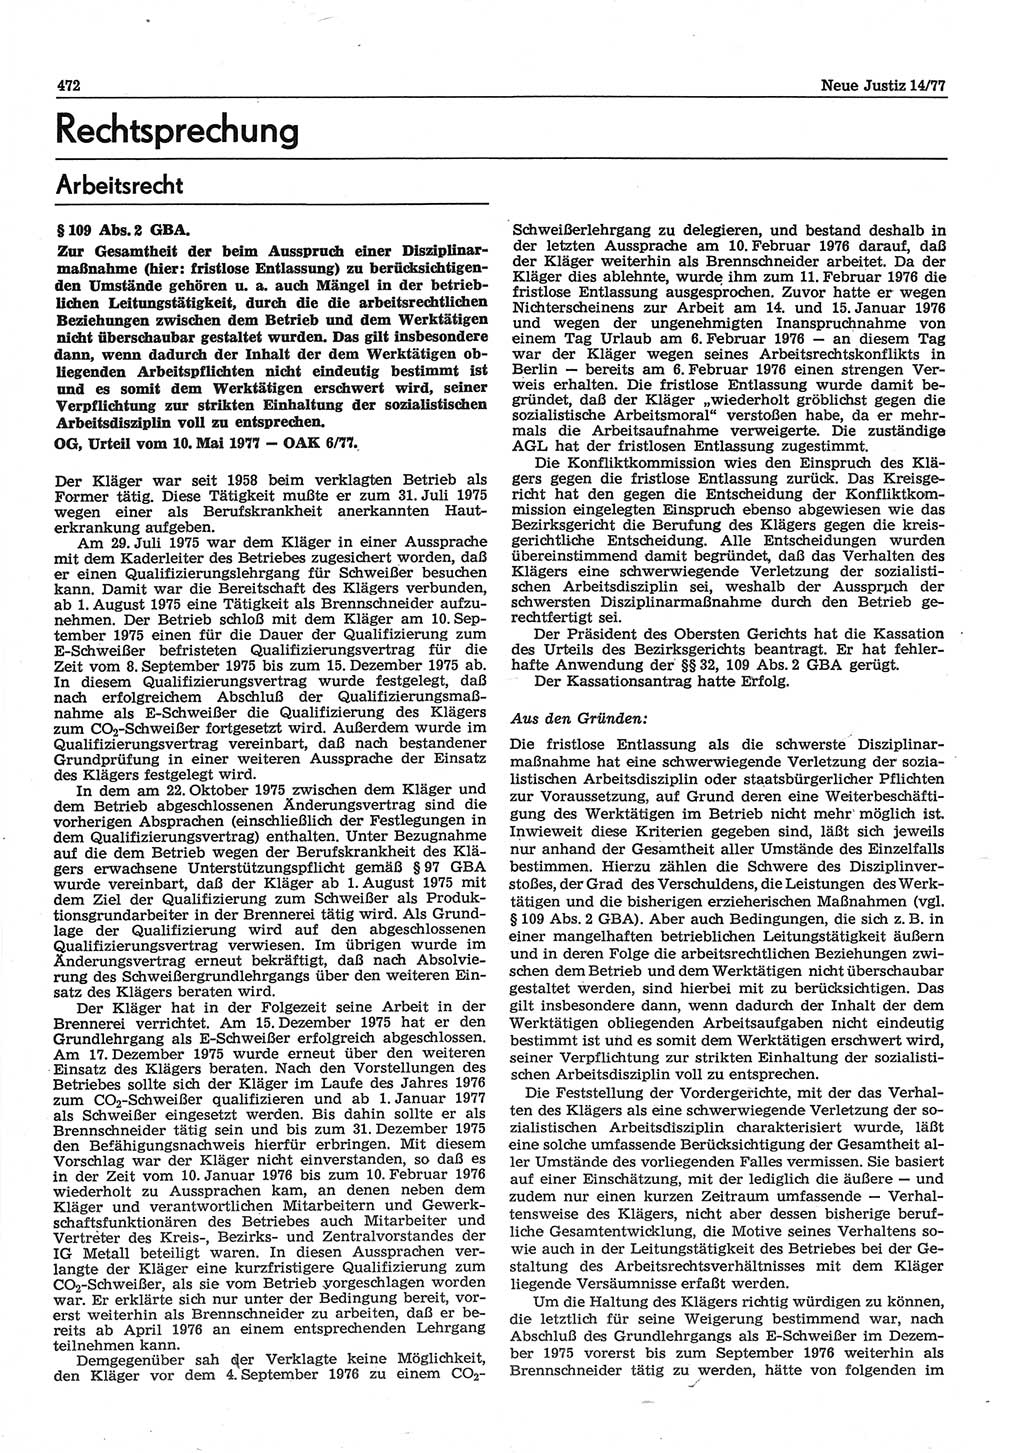 Neue Justiz (NJ), Zeitschrift für Recht und Rechtswissenschaft-Zeitschrift, sozialistisches Recht und Gesetzlichkeit, 31. Jahrgang 1977, Seite 472 (NJ DDR 1977, S. 472)